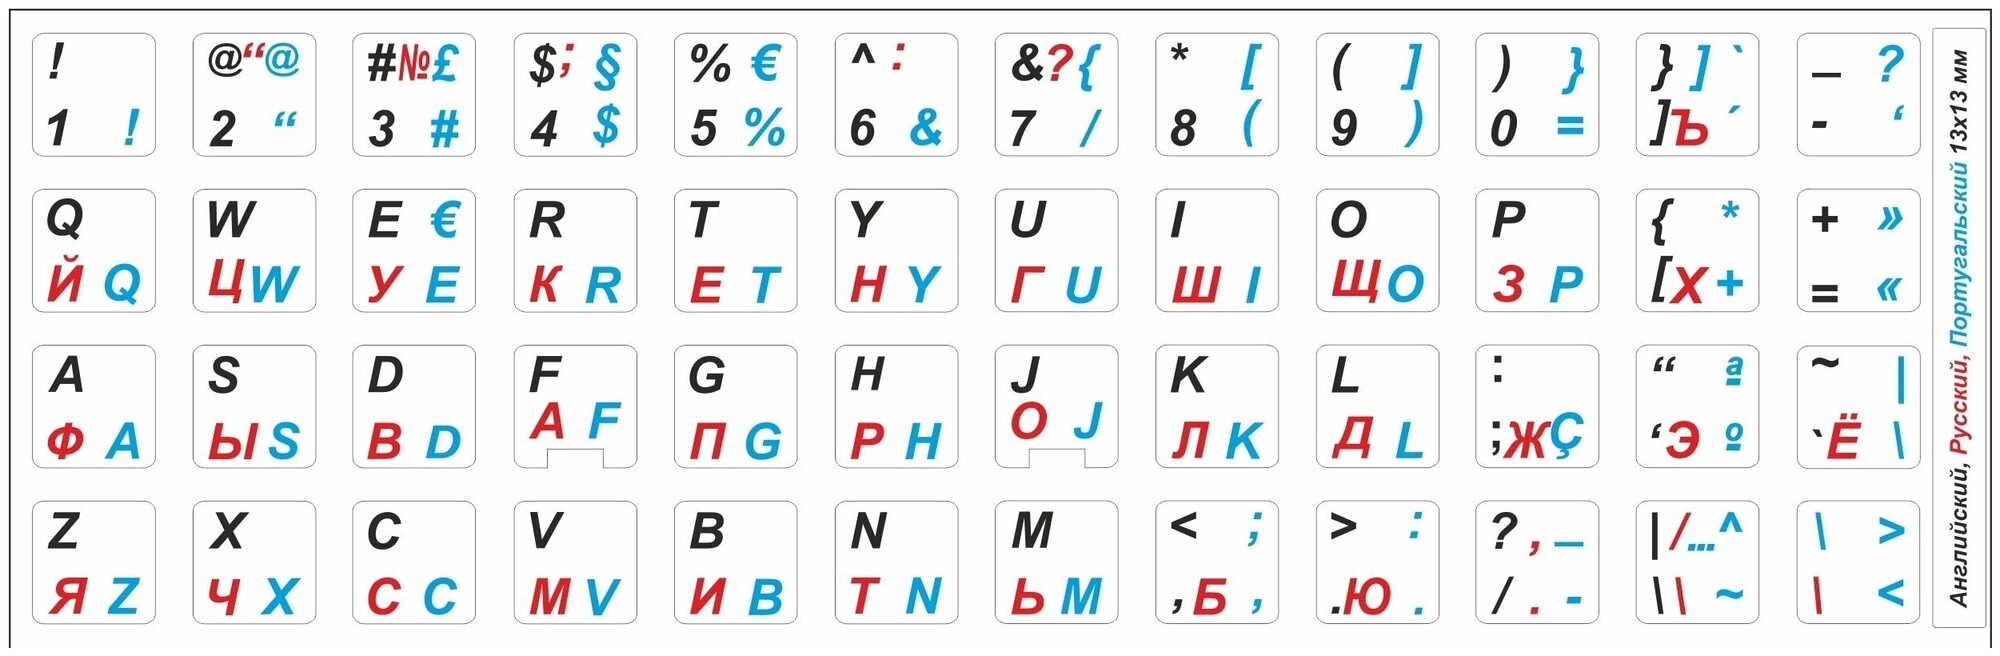 Португальские, английские, русские буквы на клавиатуру, португальские символы, наклейки букв 13x13 мм.